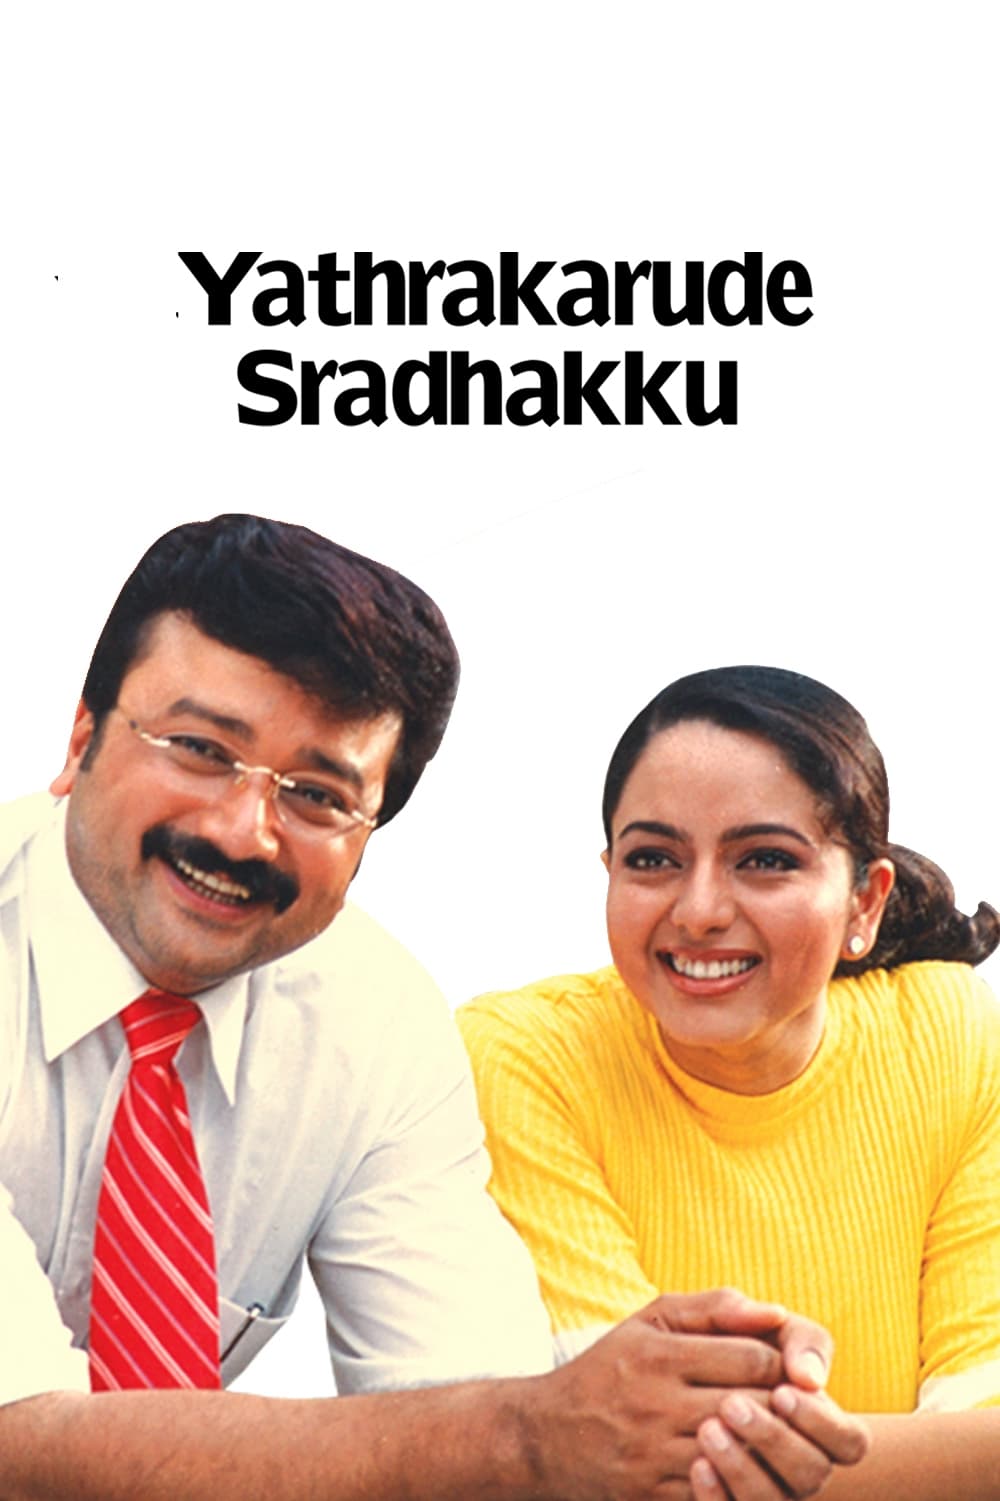 Yathrakarude Sradhakku (2002)